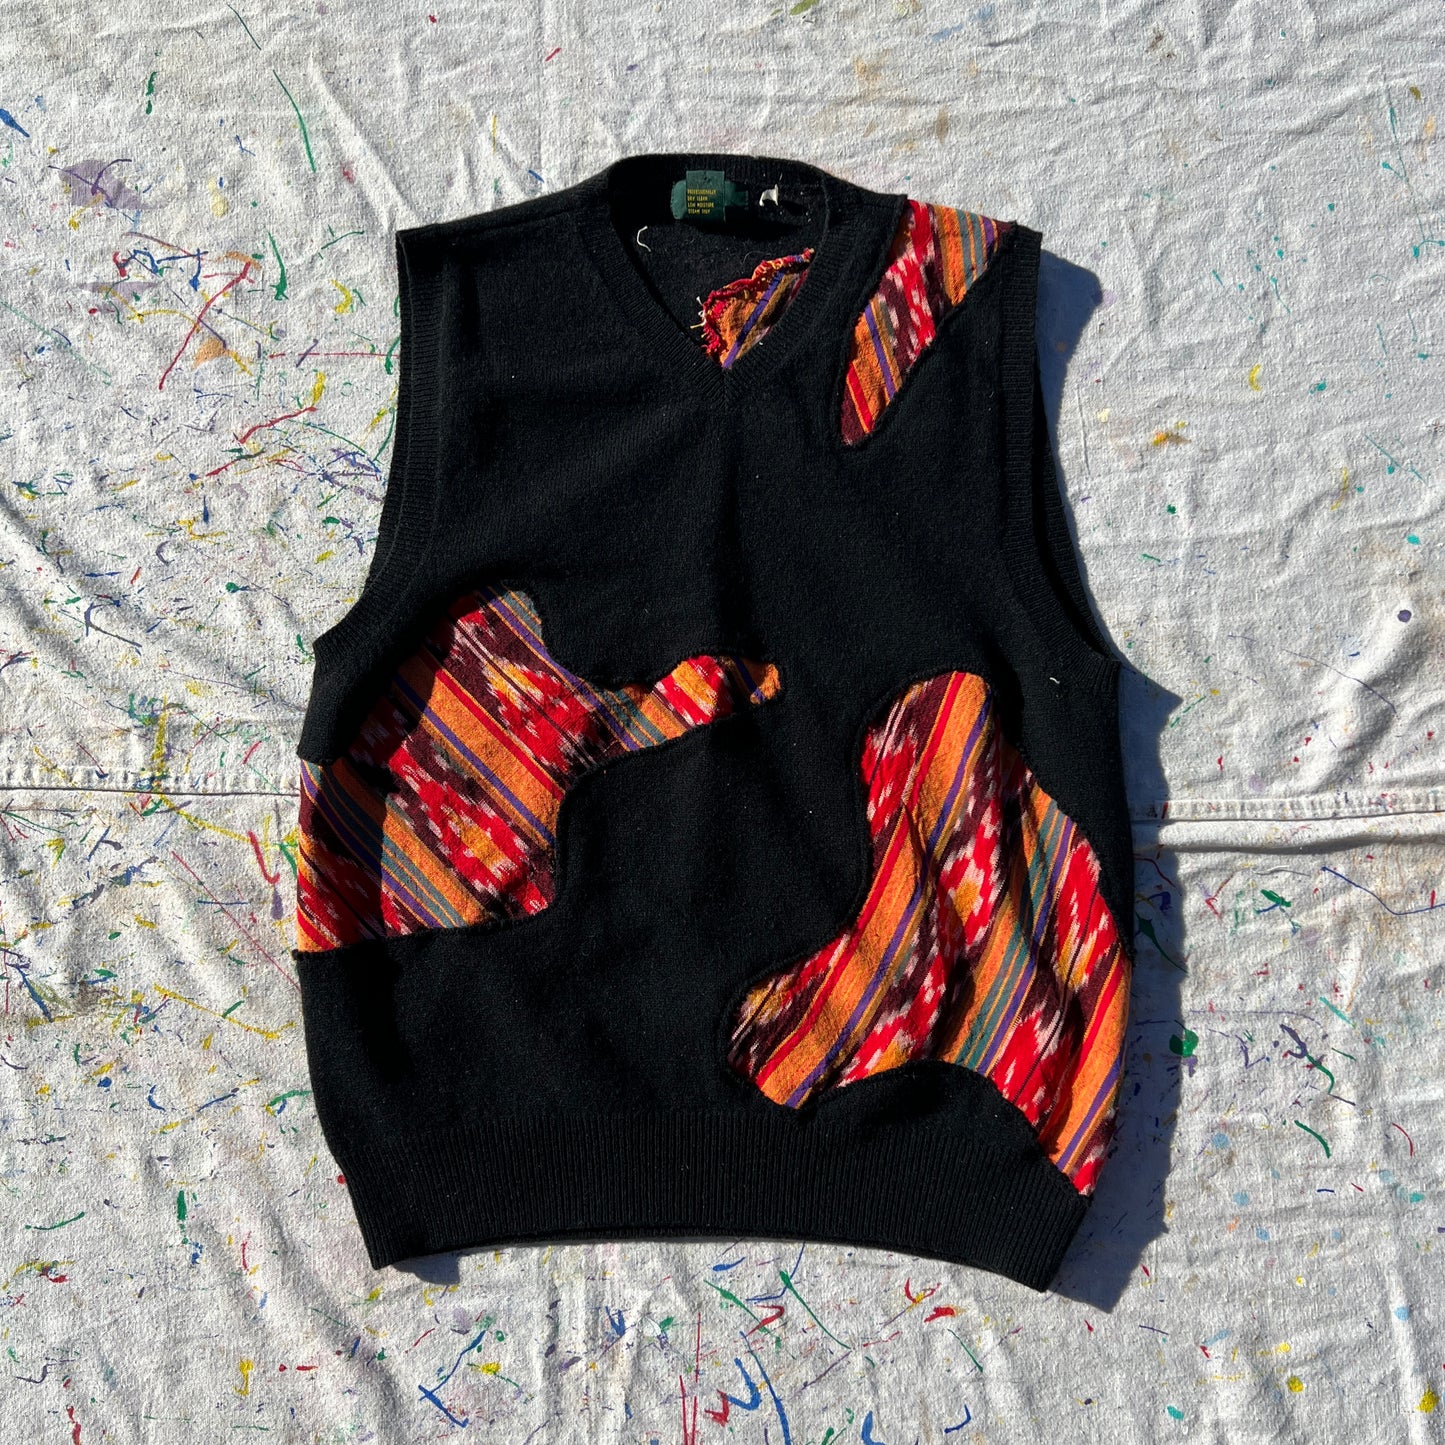 Scab Patches Sweatervest (Multicolor/Black)- M